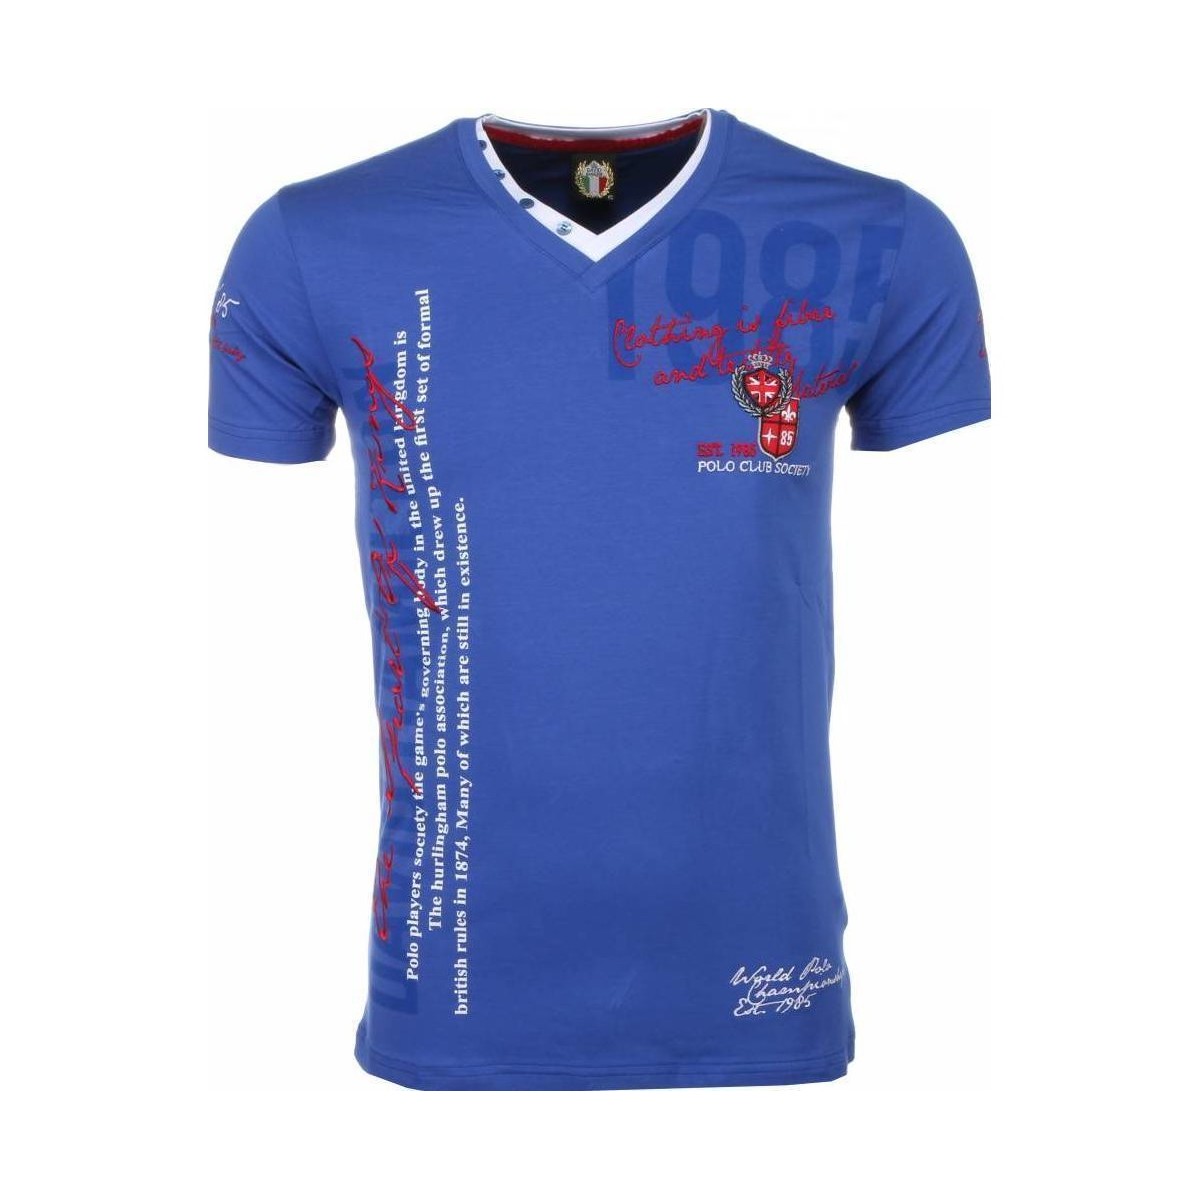 textil Herr T-shirts David Copper För Italy Blå